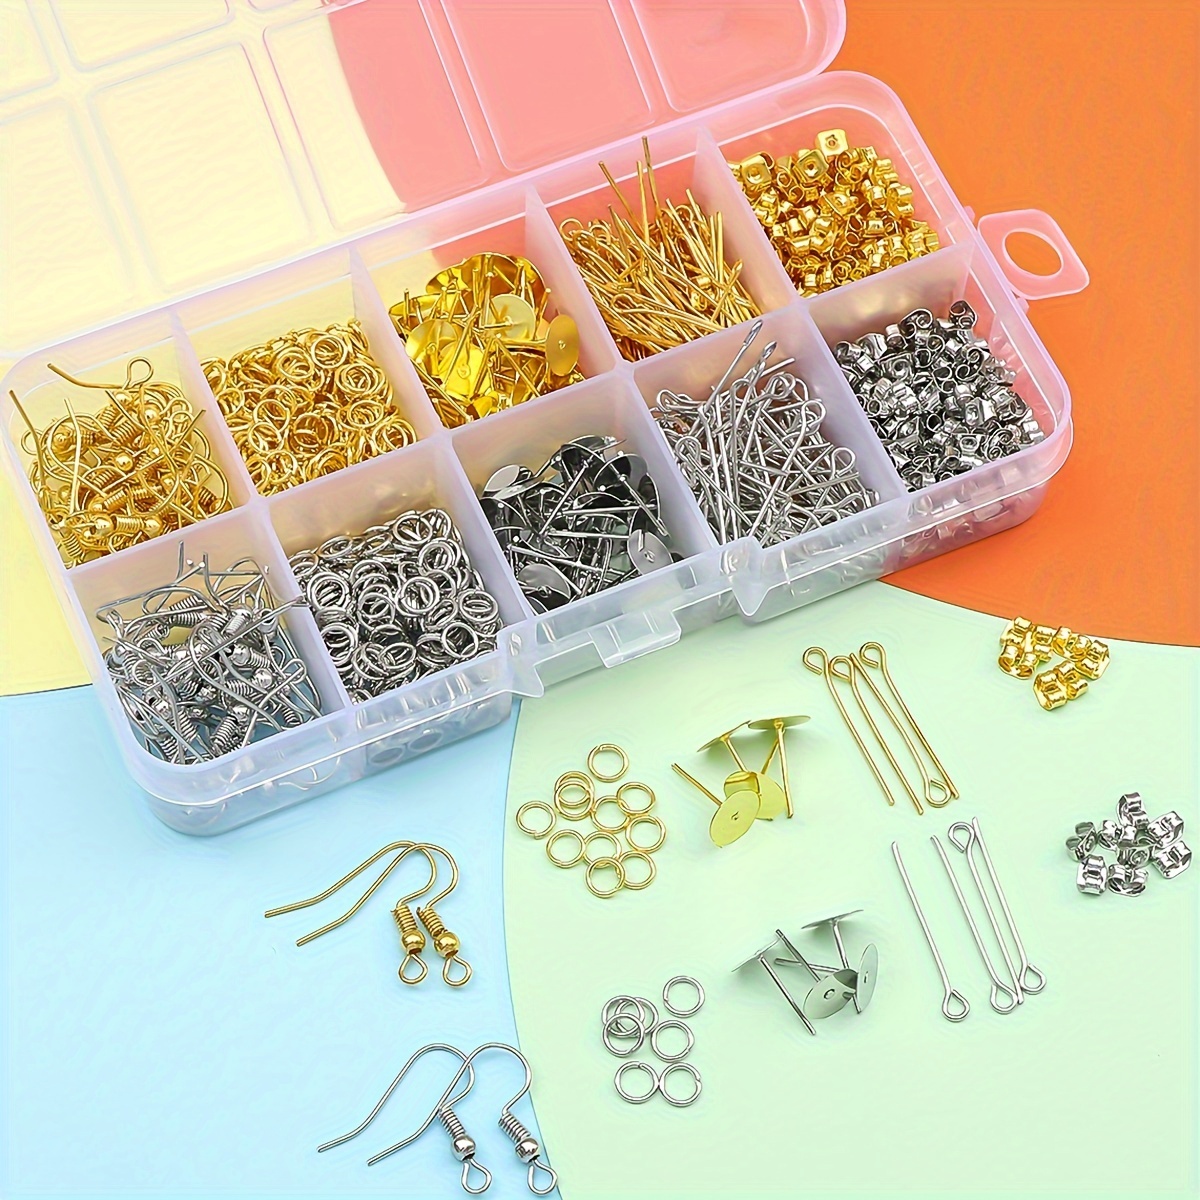  Kit de suministros para hacer joyas, aretes y herramientas de  reparación, incluye dijes de joyería, cuentas, hallazgos, estuche y alambre  de cuentas para collar, pulsera, regalos de manualidades para niñas y